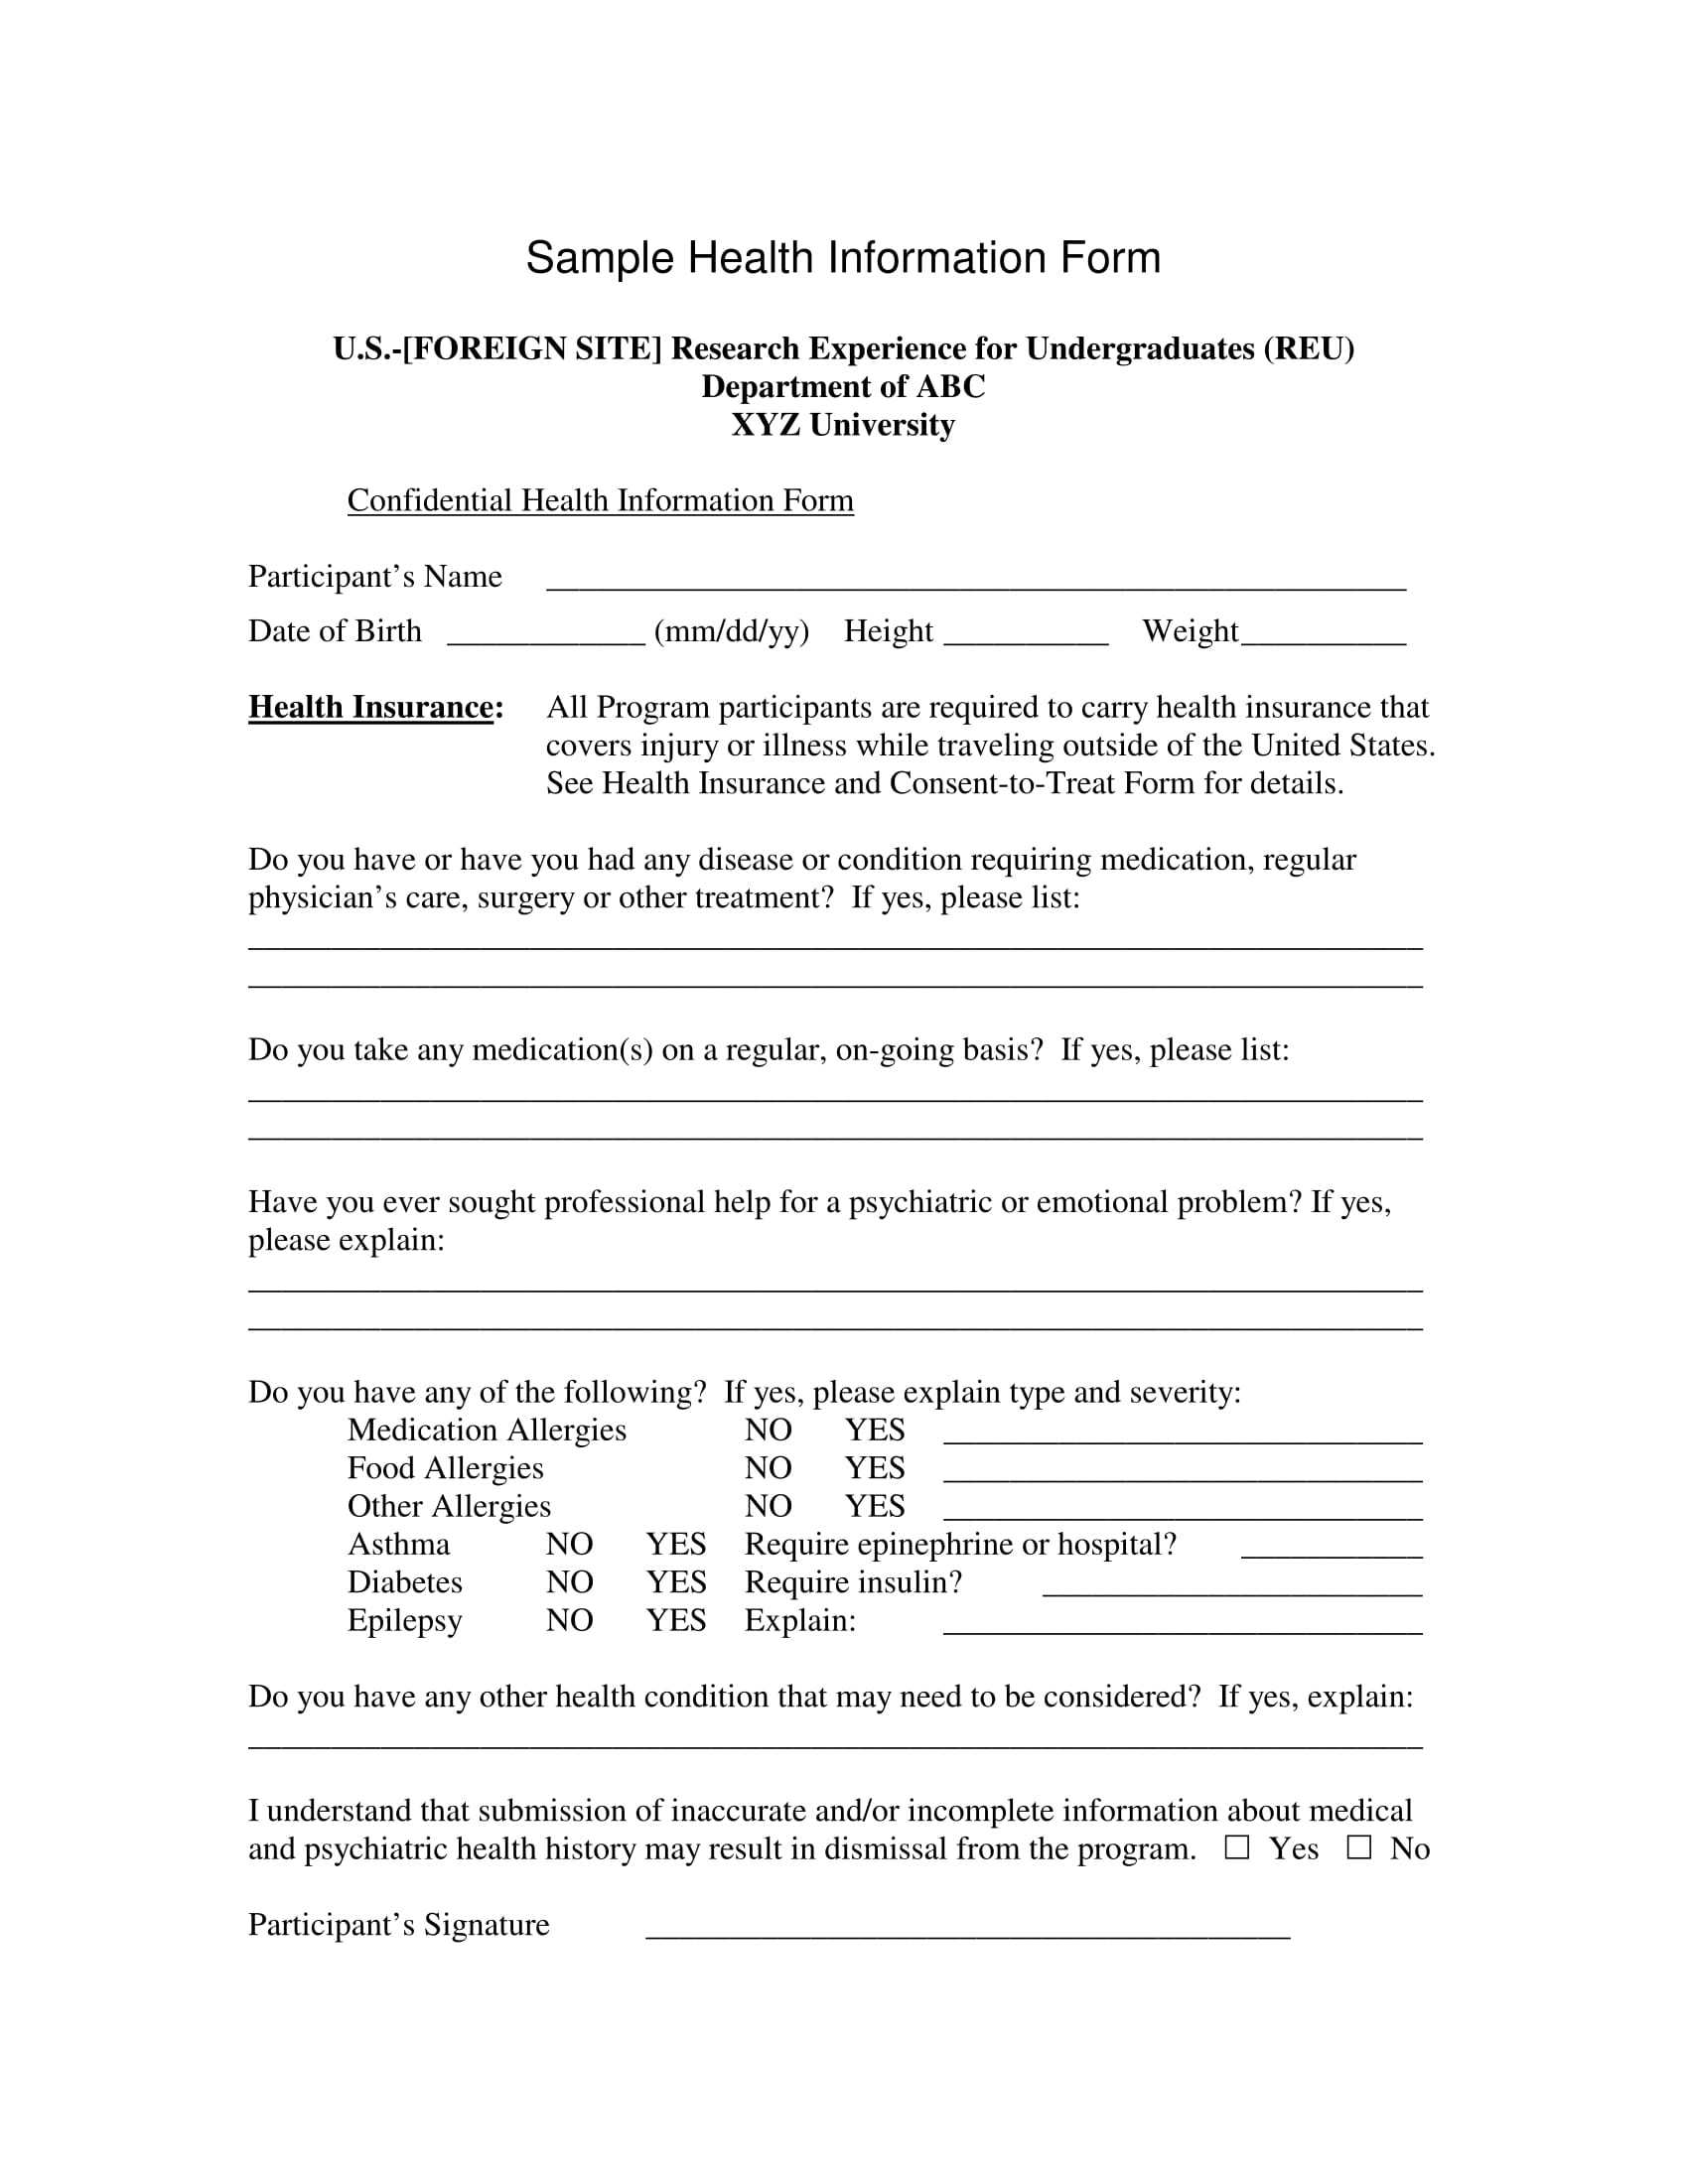 sample health information form 1